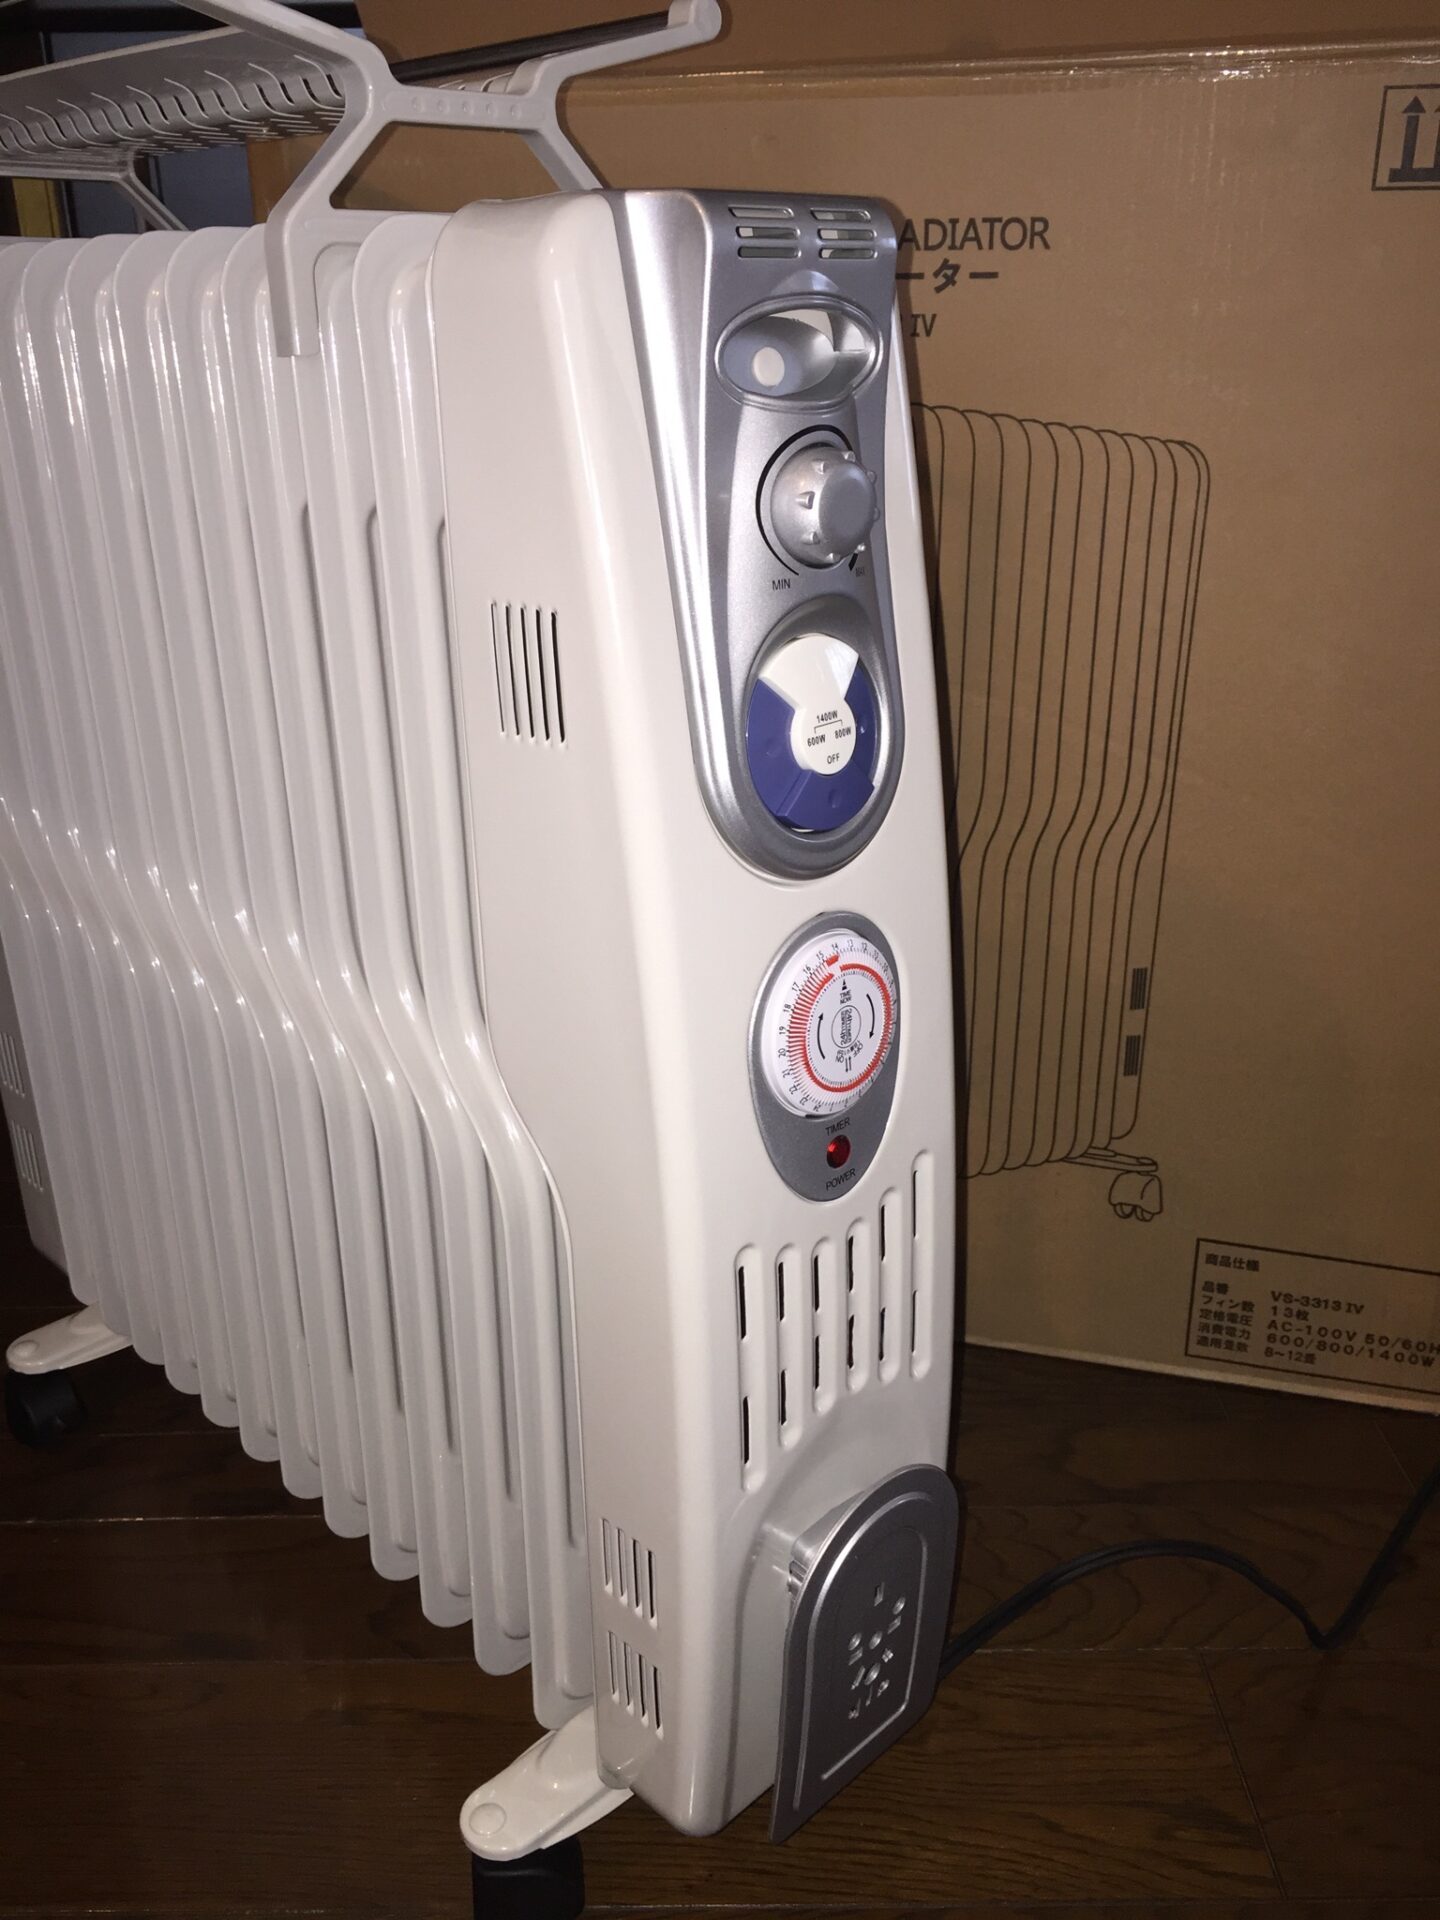 安心で乾燥しにくい暖房器具のオイルヒーター VS-3313-IVを買いました 